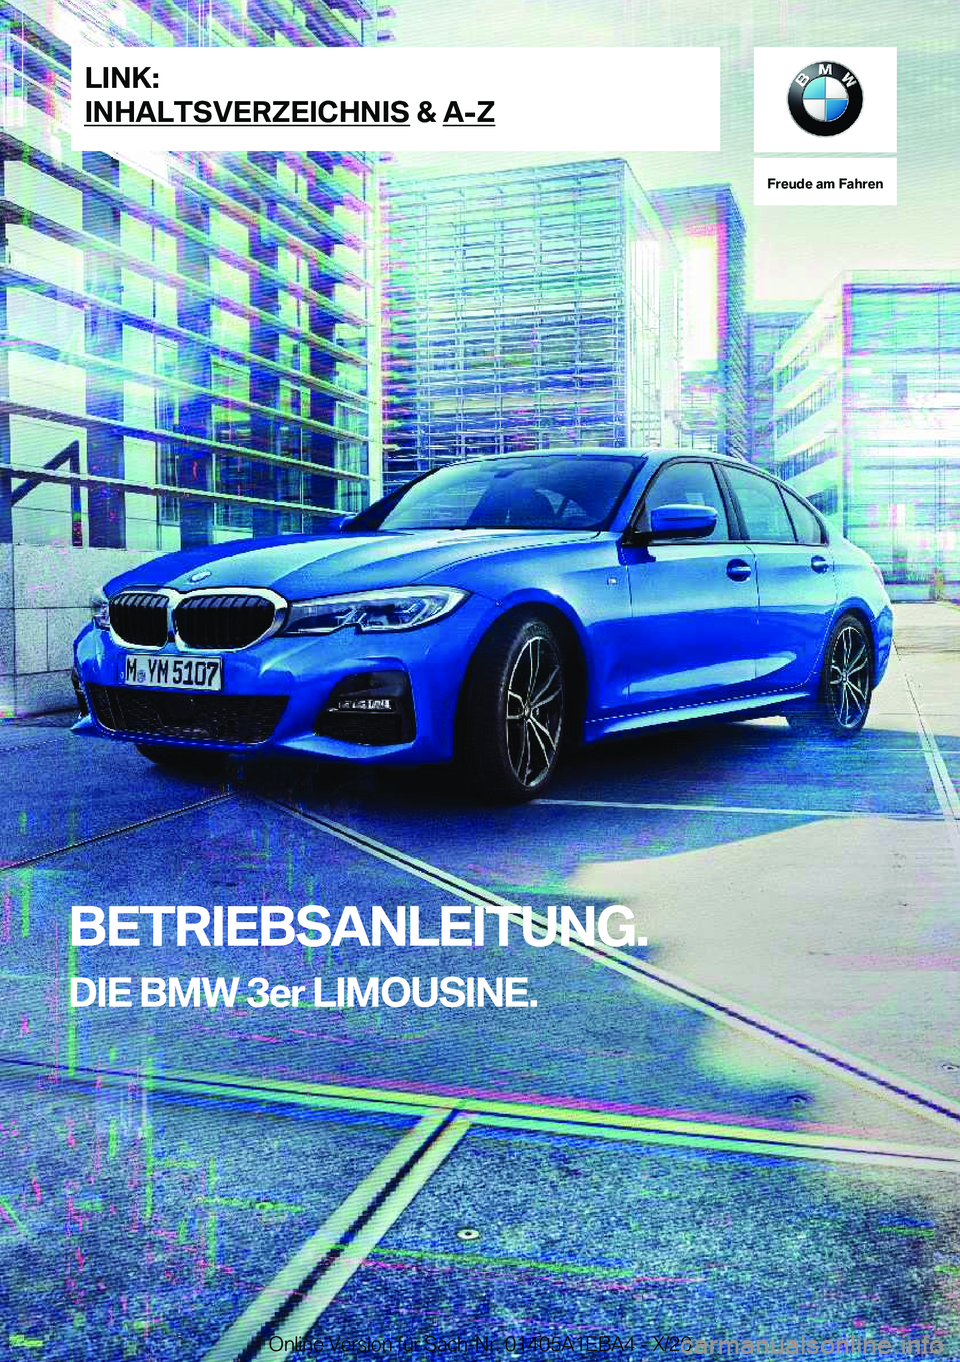 BMW 3 SERIES 2021  Betriebsanleitungen (in German) �F�r�e�u�d�e��a�m��F�a�h�r�e�n
�B�E�T�R�I�E�B�S�A�N�L�E�I�T�U�N�G�.�D�I�E��B�M�W��3�e�r��L�I�M�O�U�S�I�N�E�.�L�I�N�K�:
�I�N�H�A�L�T�S�V�E�R�Z�E�I�C�H�N�I�S��&��A�-�Z�O�n�l�i�n�e��V�e�r�s�i�o�n